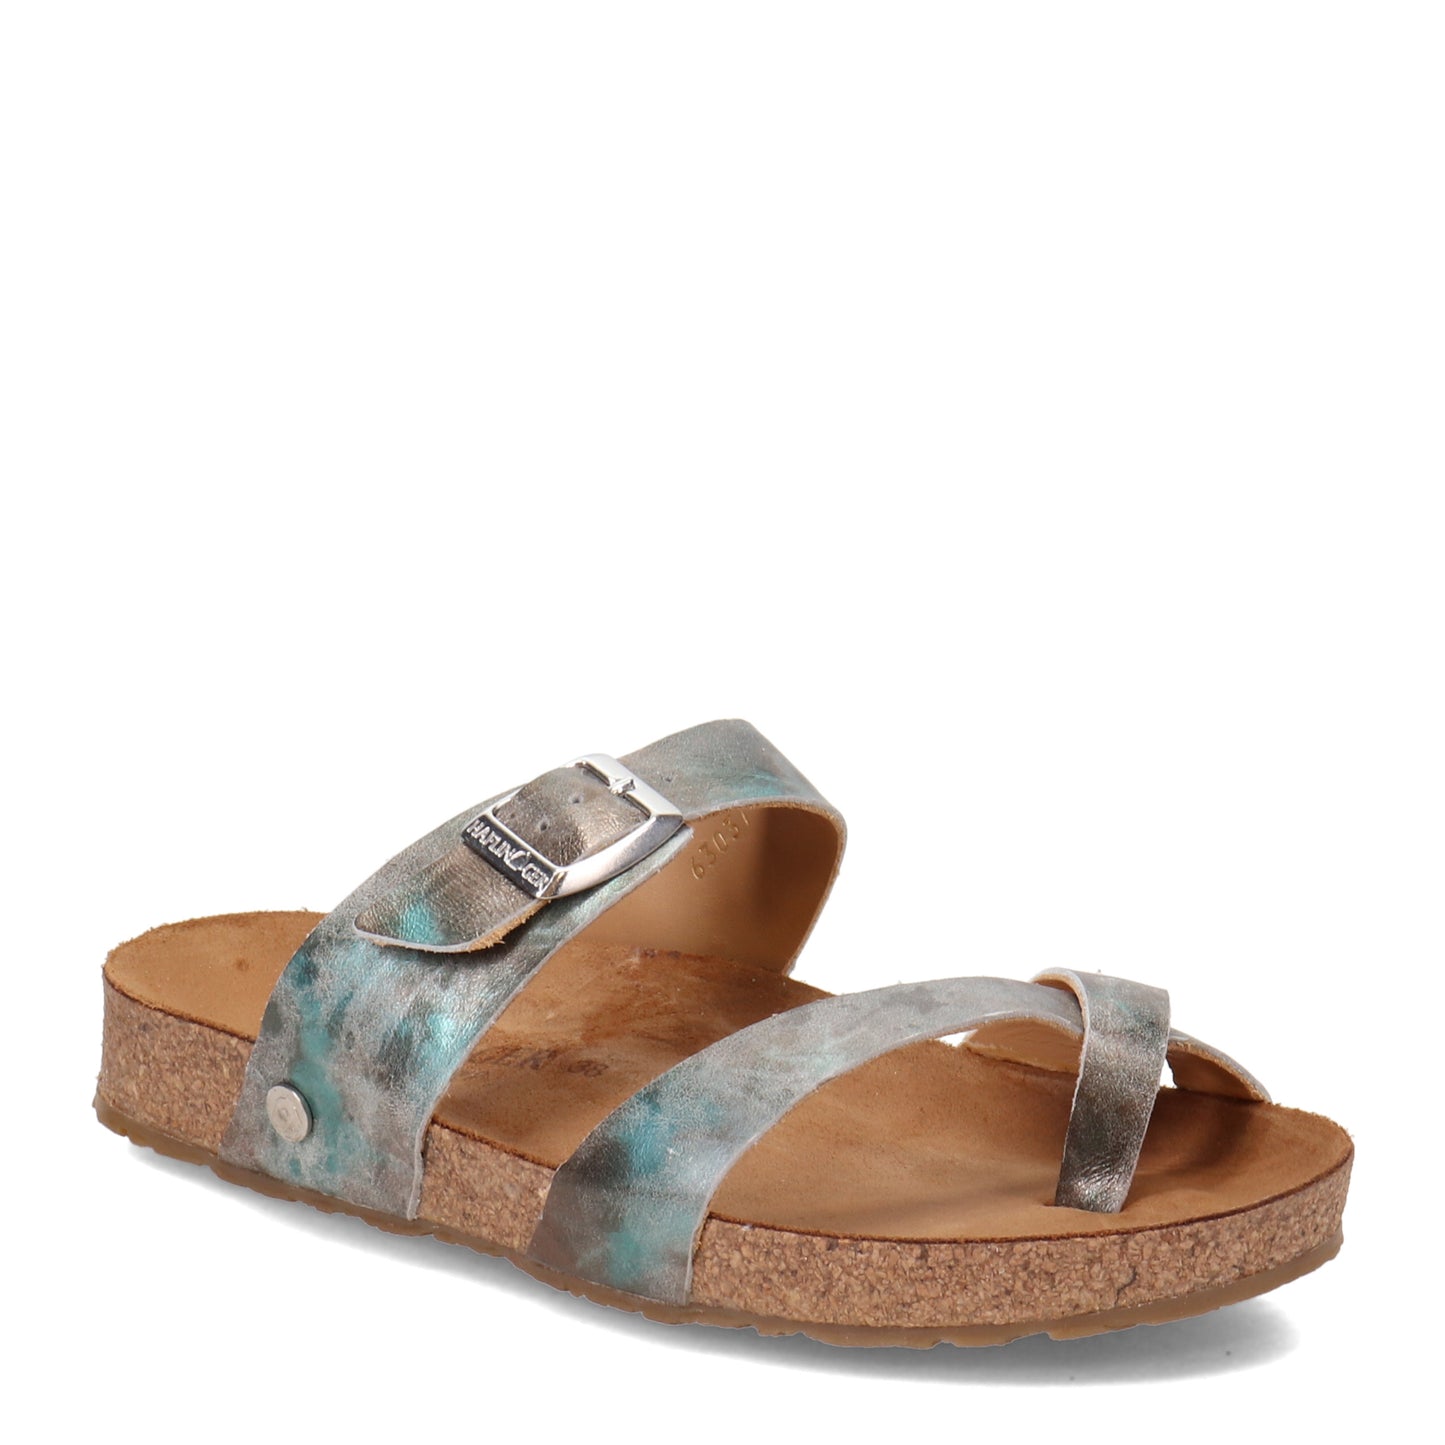 Peltz Shoes  Women's Haflinger Juno Sandal LIME 819079-1674